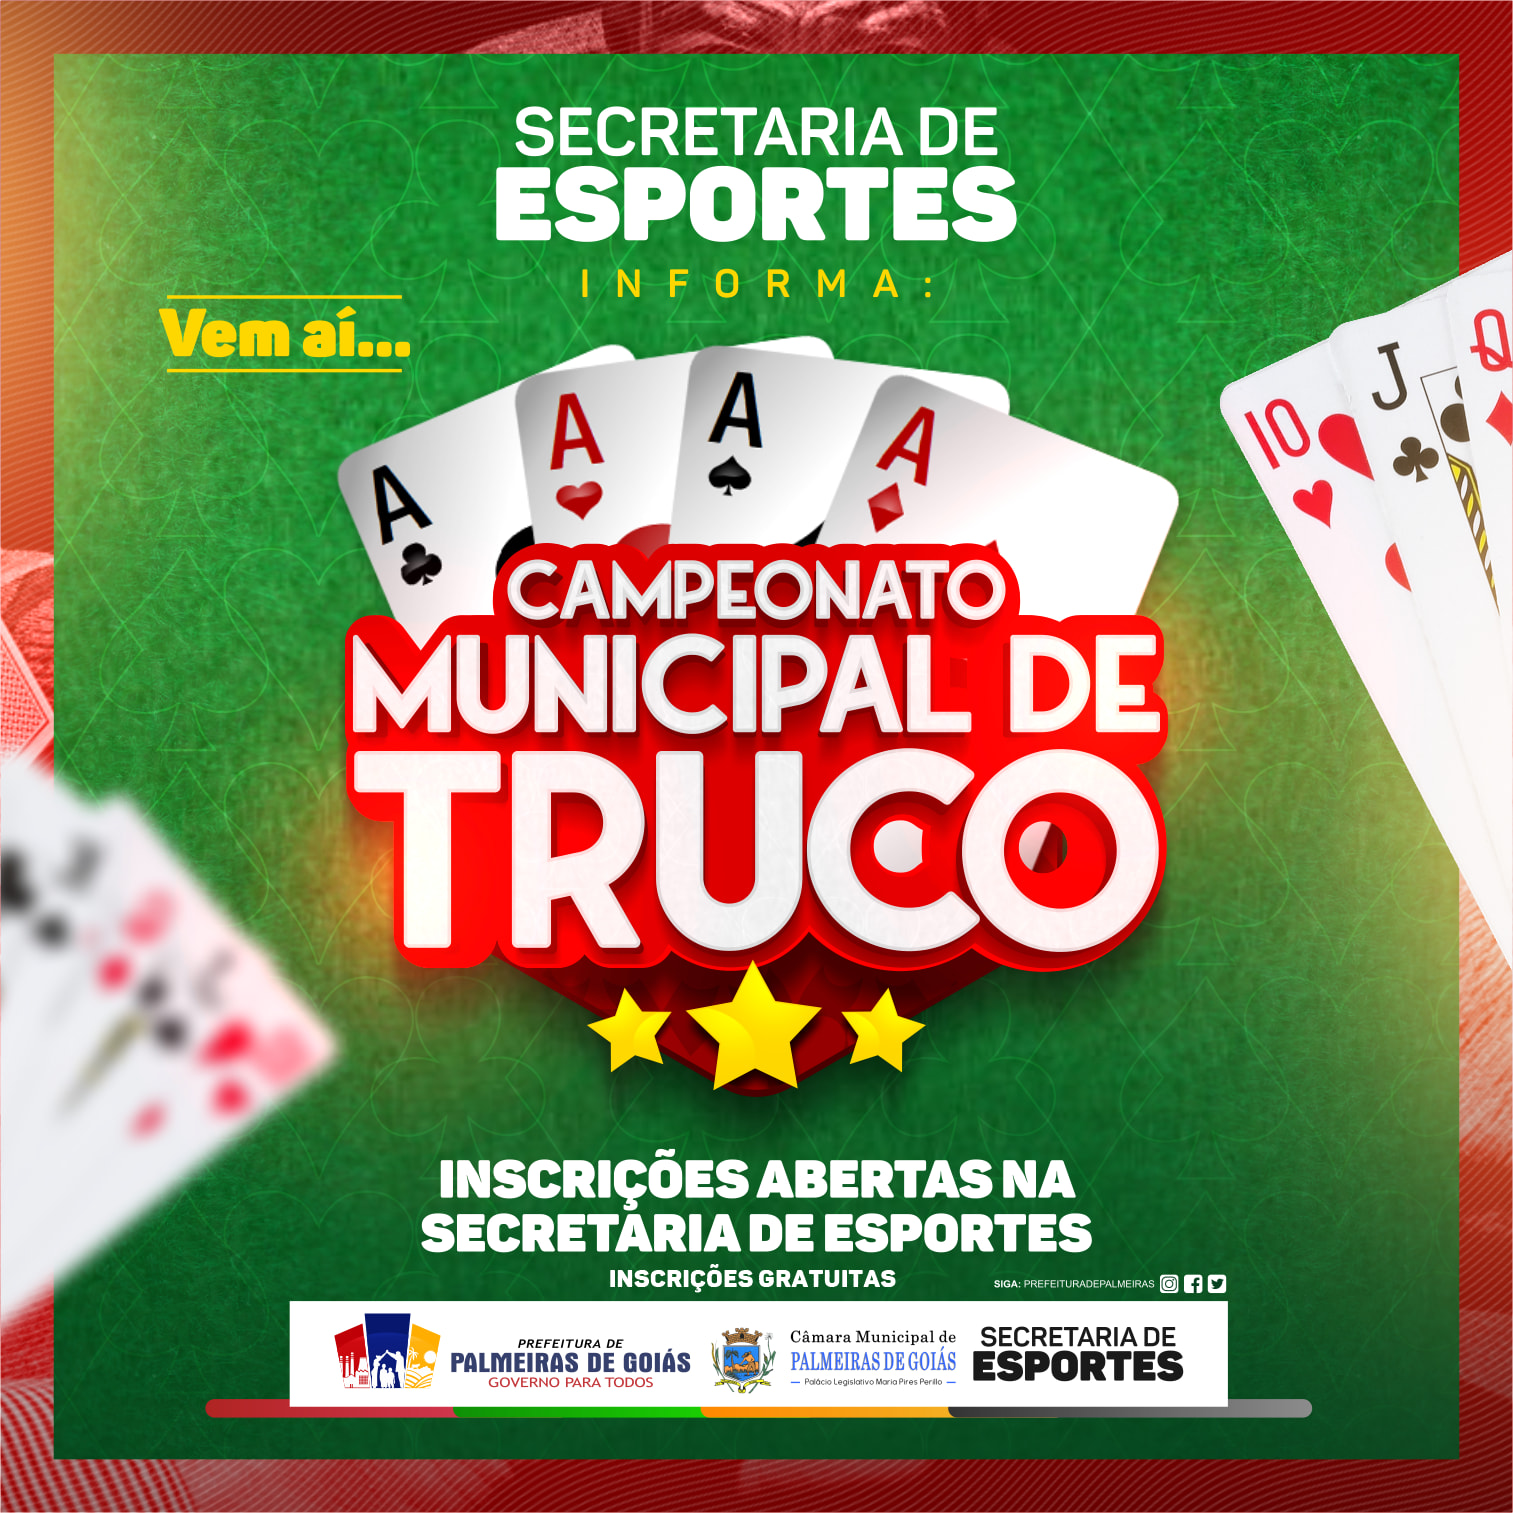 TBTO - Torneio Brasileiro de Truco Online